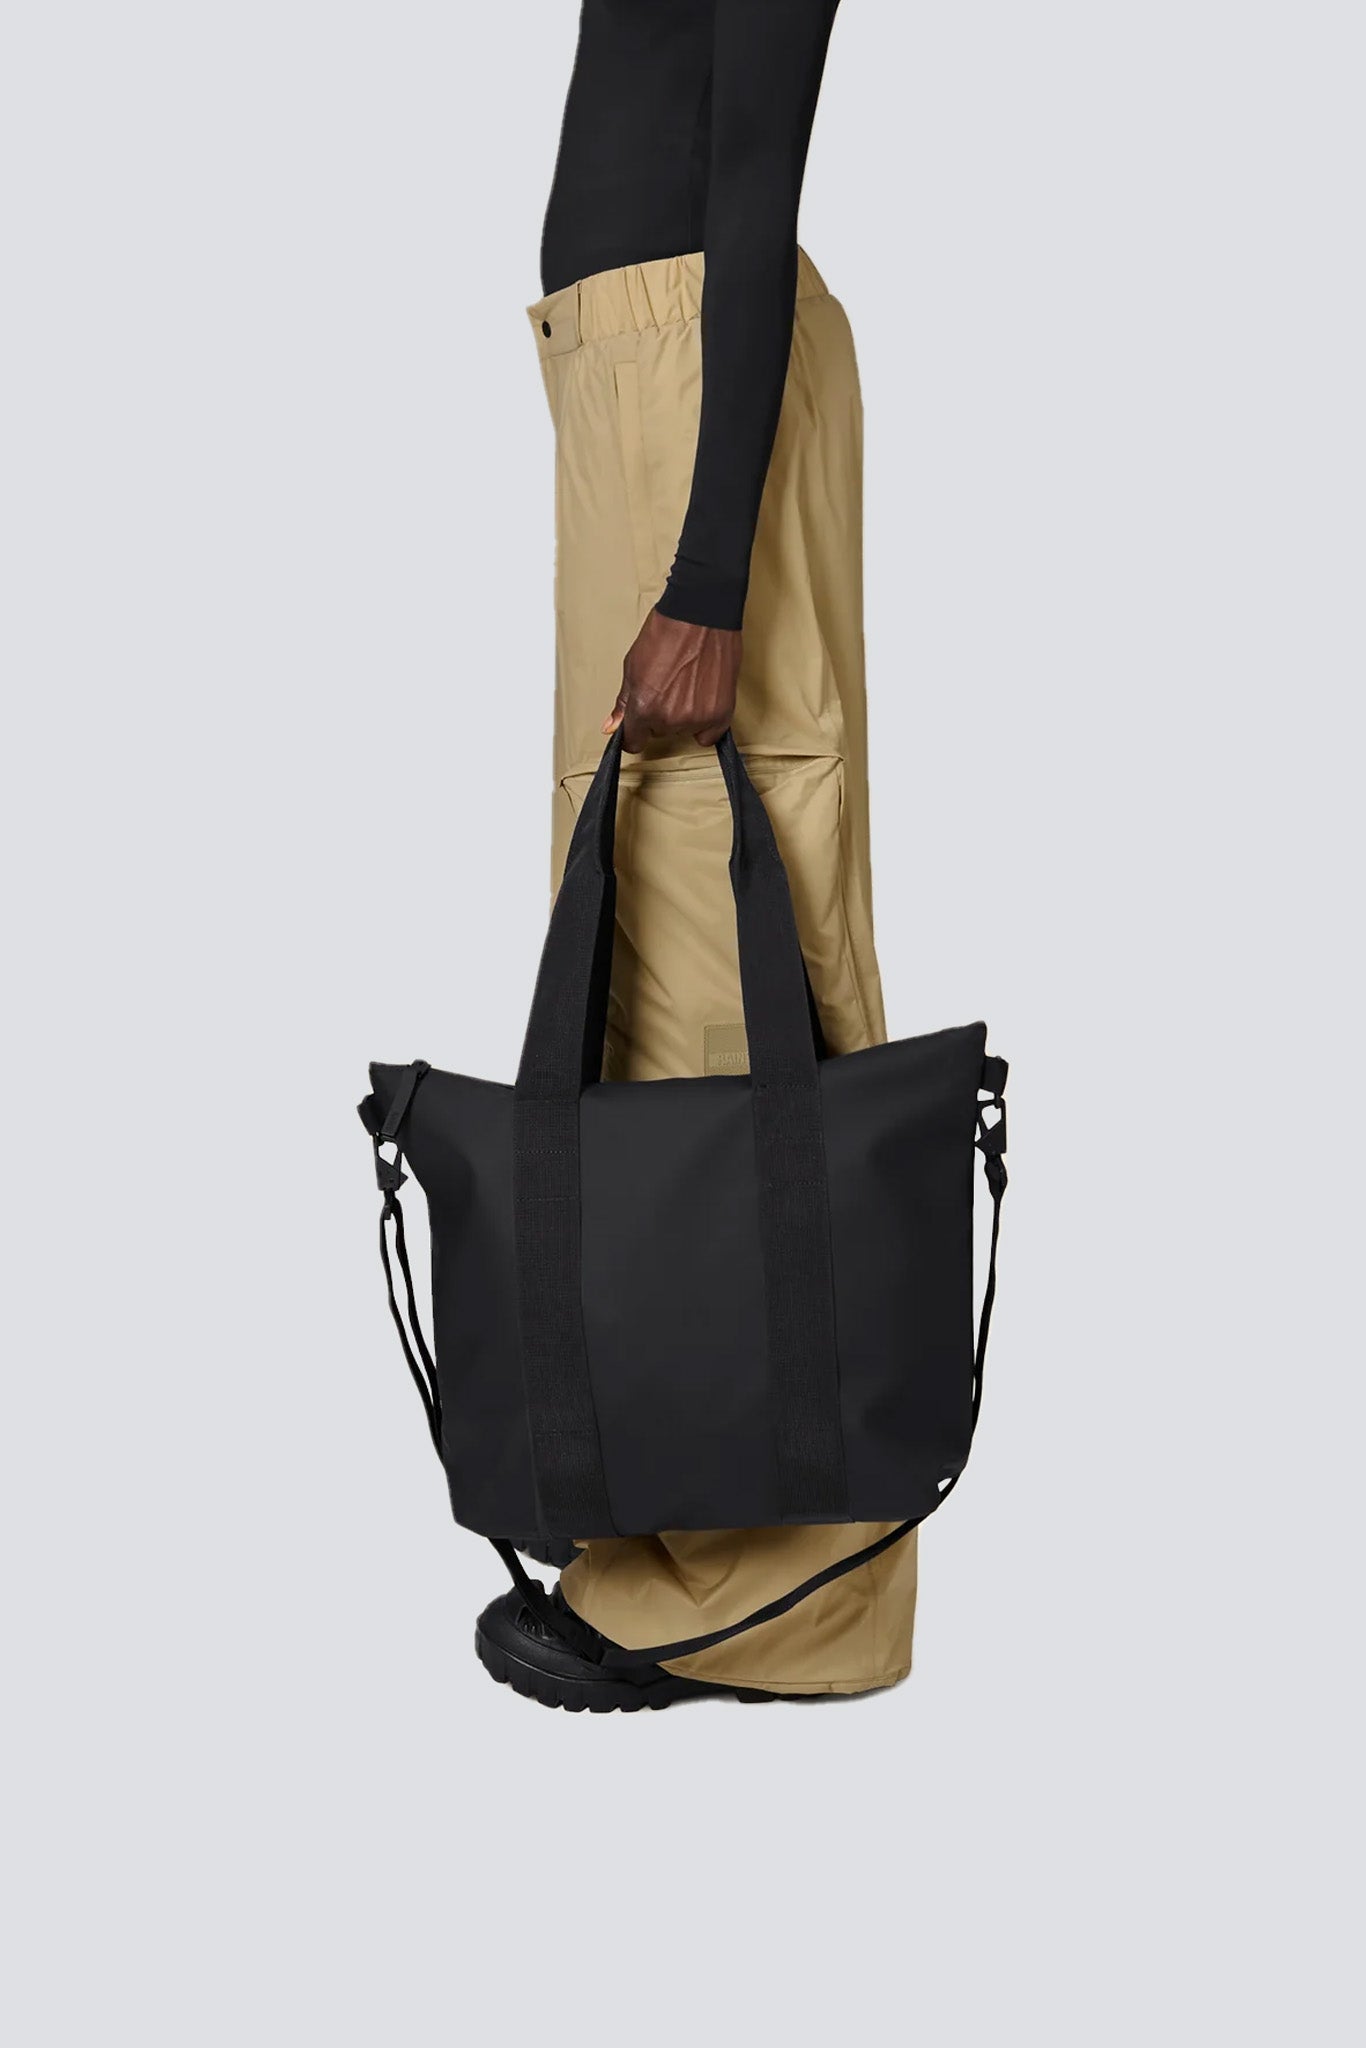 Tusk Air | Zip Top Tote Bag Black